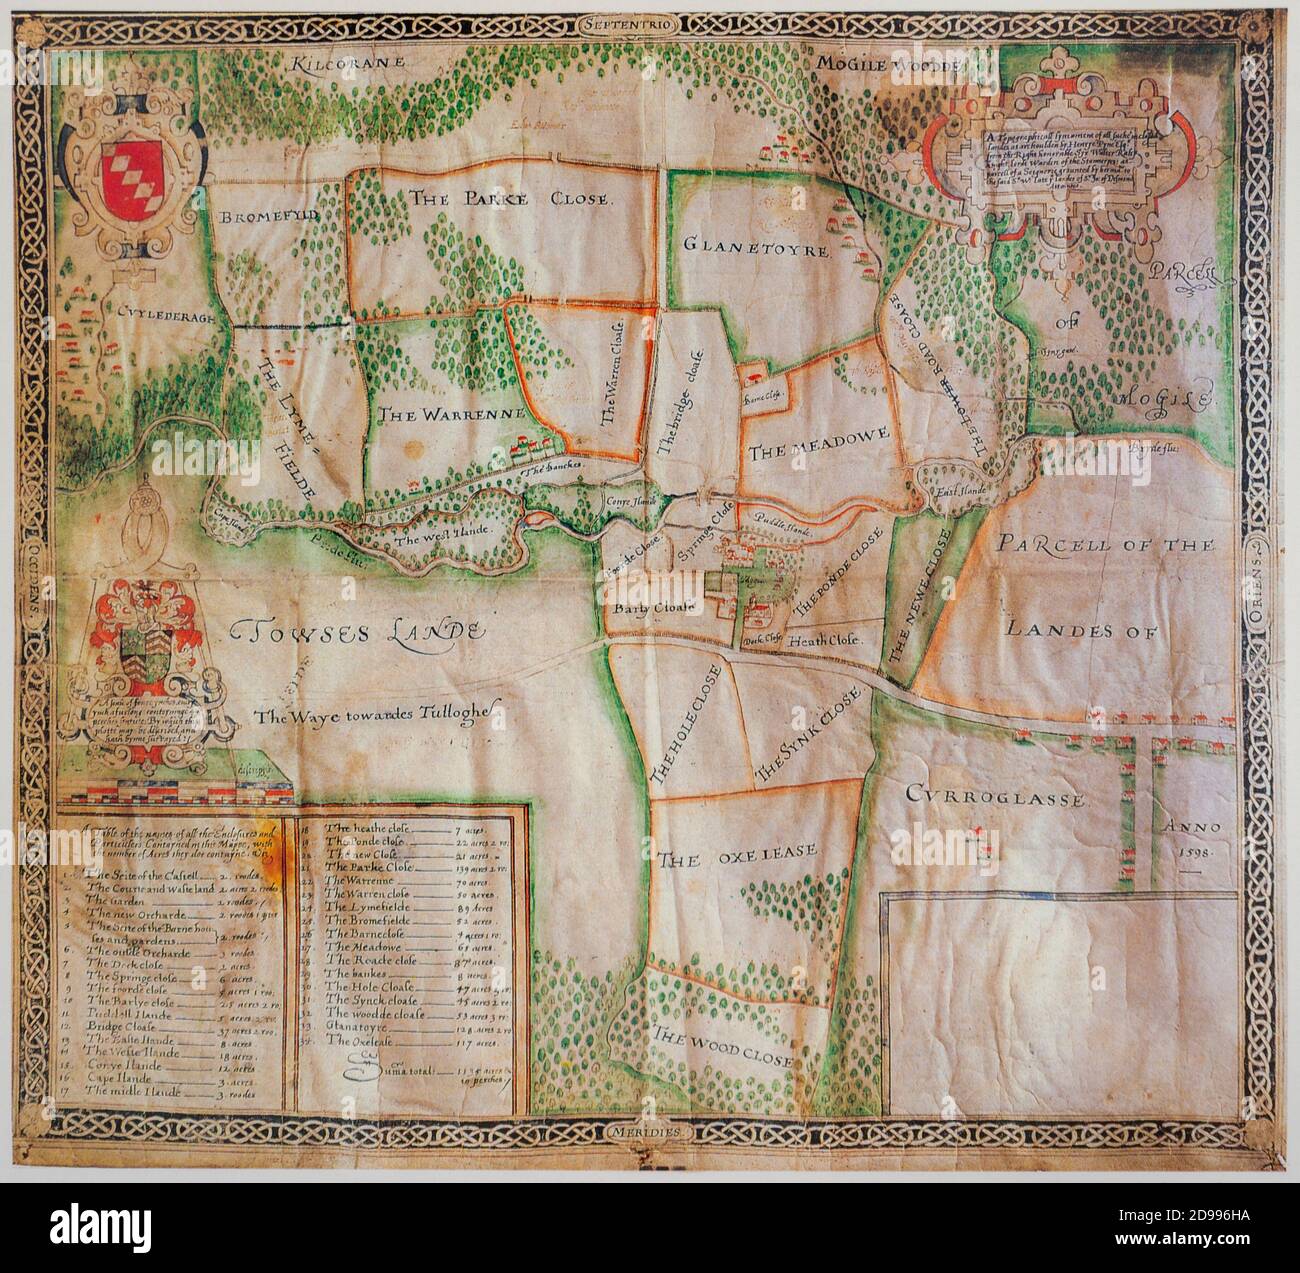 Alte antike Karte von Sir Walter Raleigh aus dem 16. Jahrhundert In Mogeely County Cork Irland ab 1598 als frühestens Immobilienkarte für Irland Stockfoto